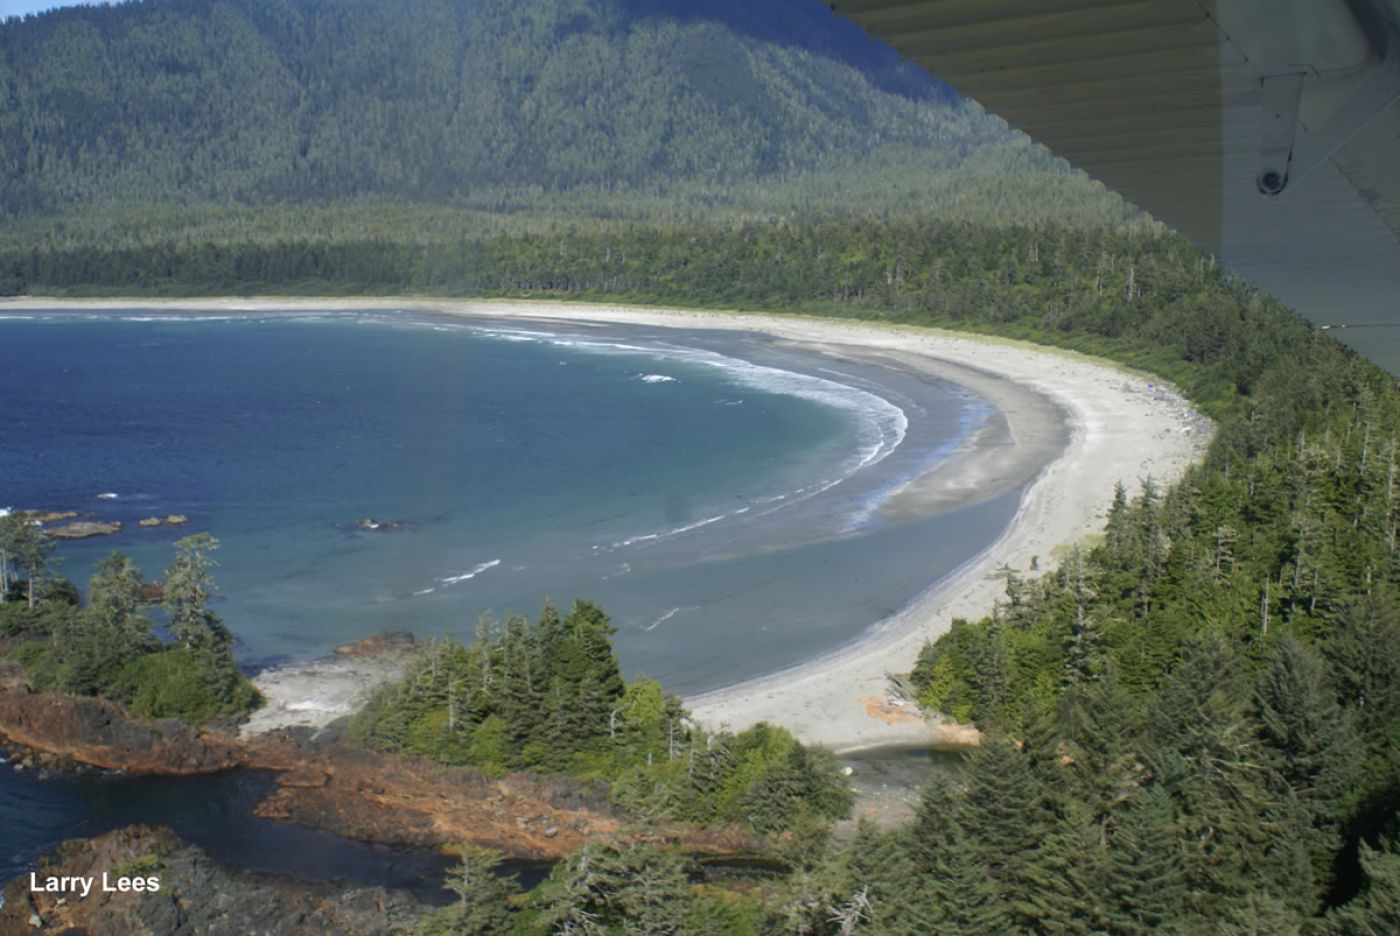 hiking tour on vancouver island with view of beach | zelturlaub mit wandern auf Vancouver Island mit blick über den strand